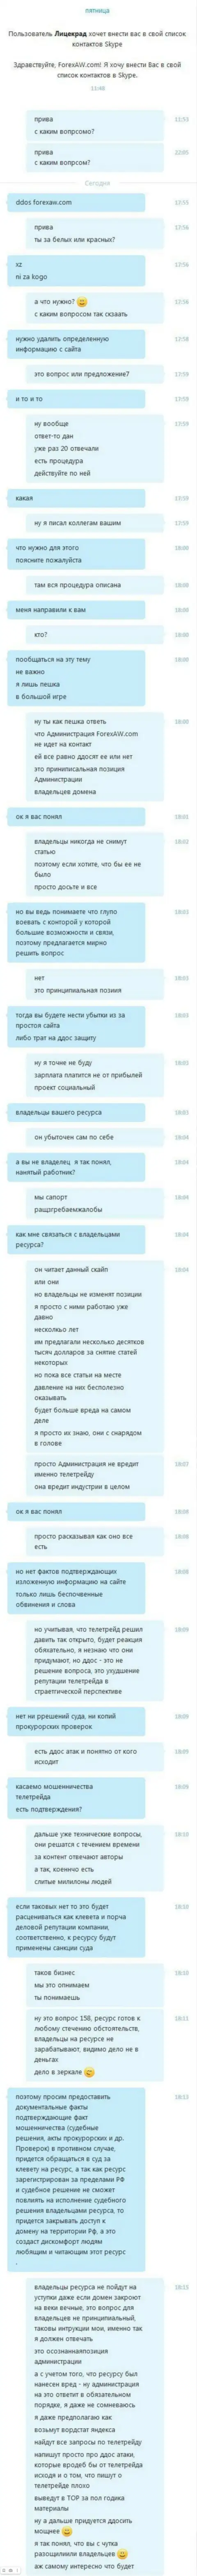 Переписка с представителем мошенников TeleTrade Ru, требующим удалить публикацию